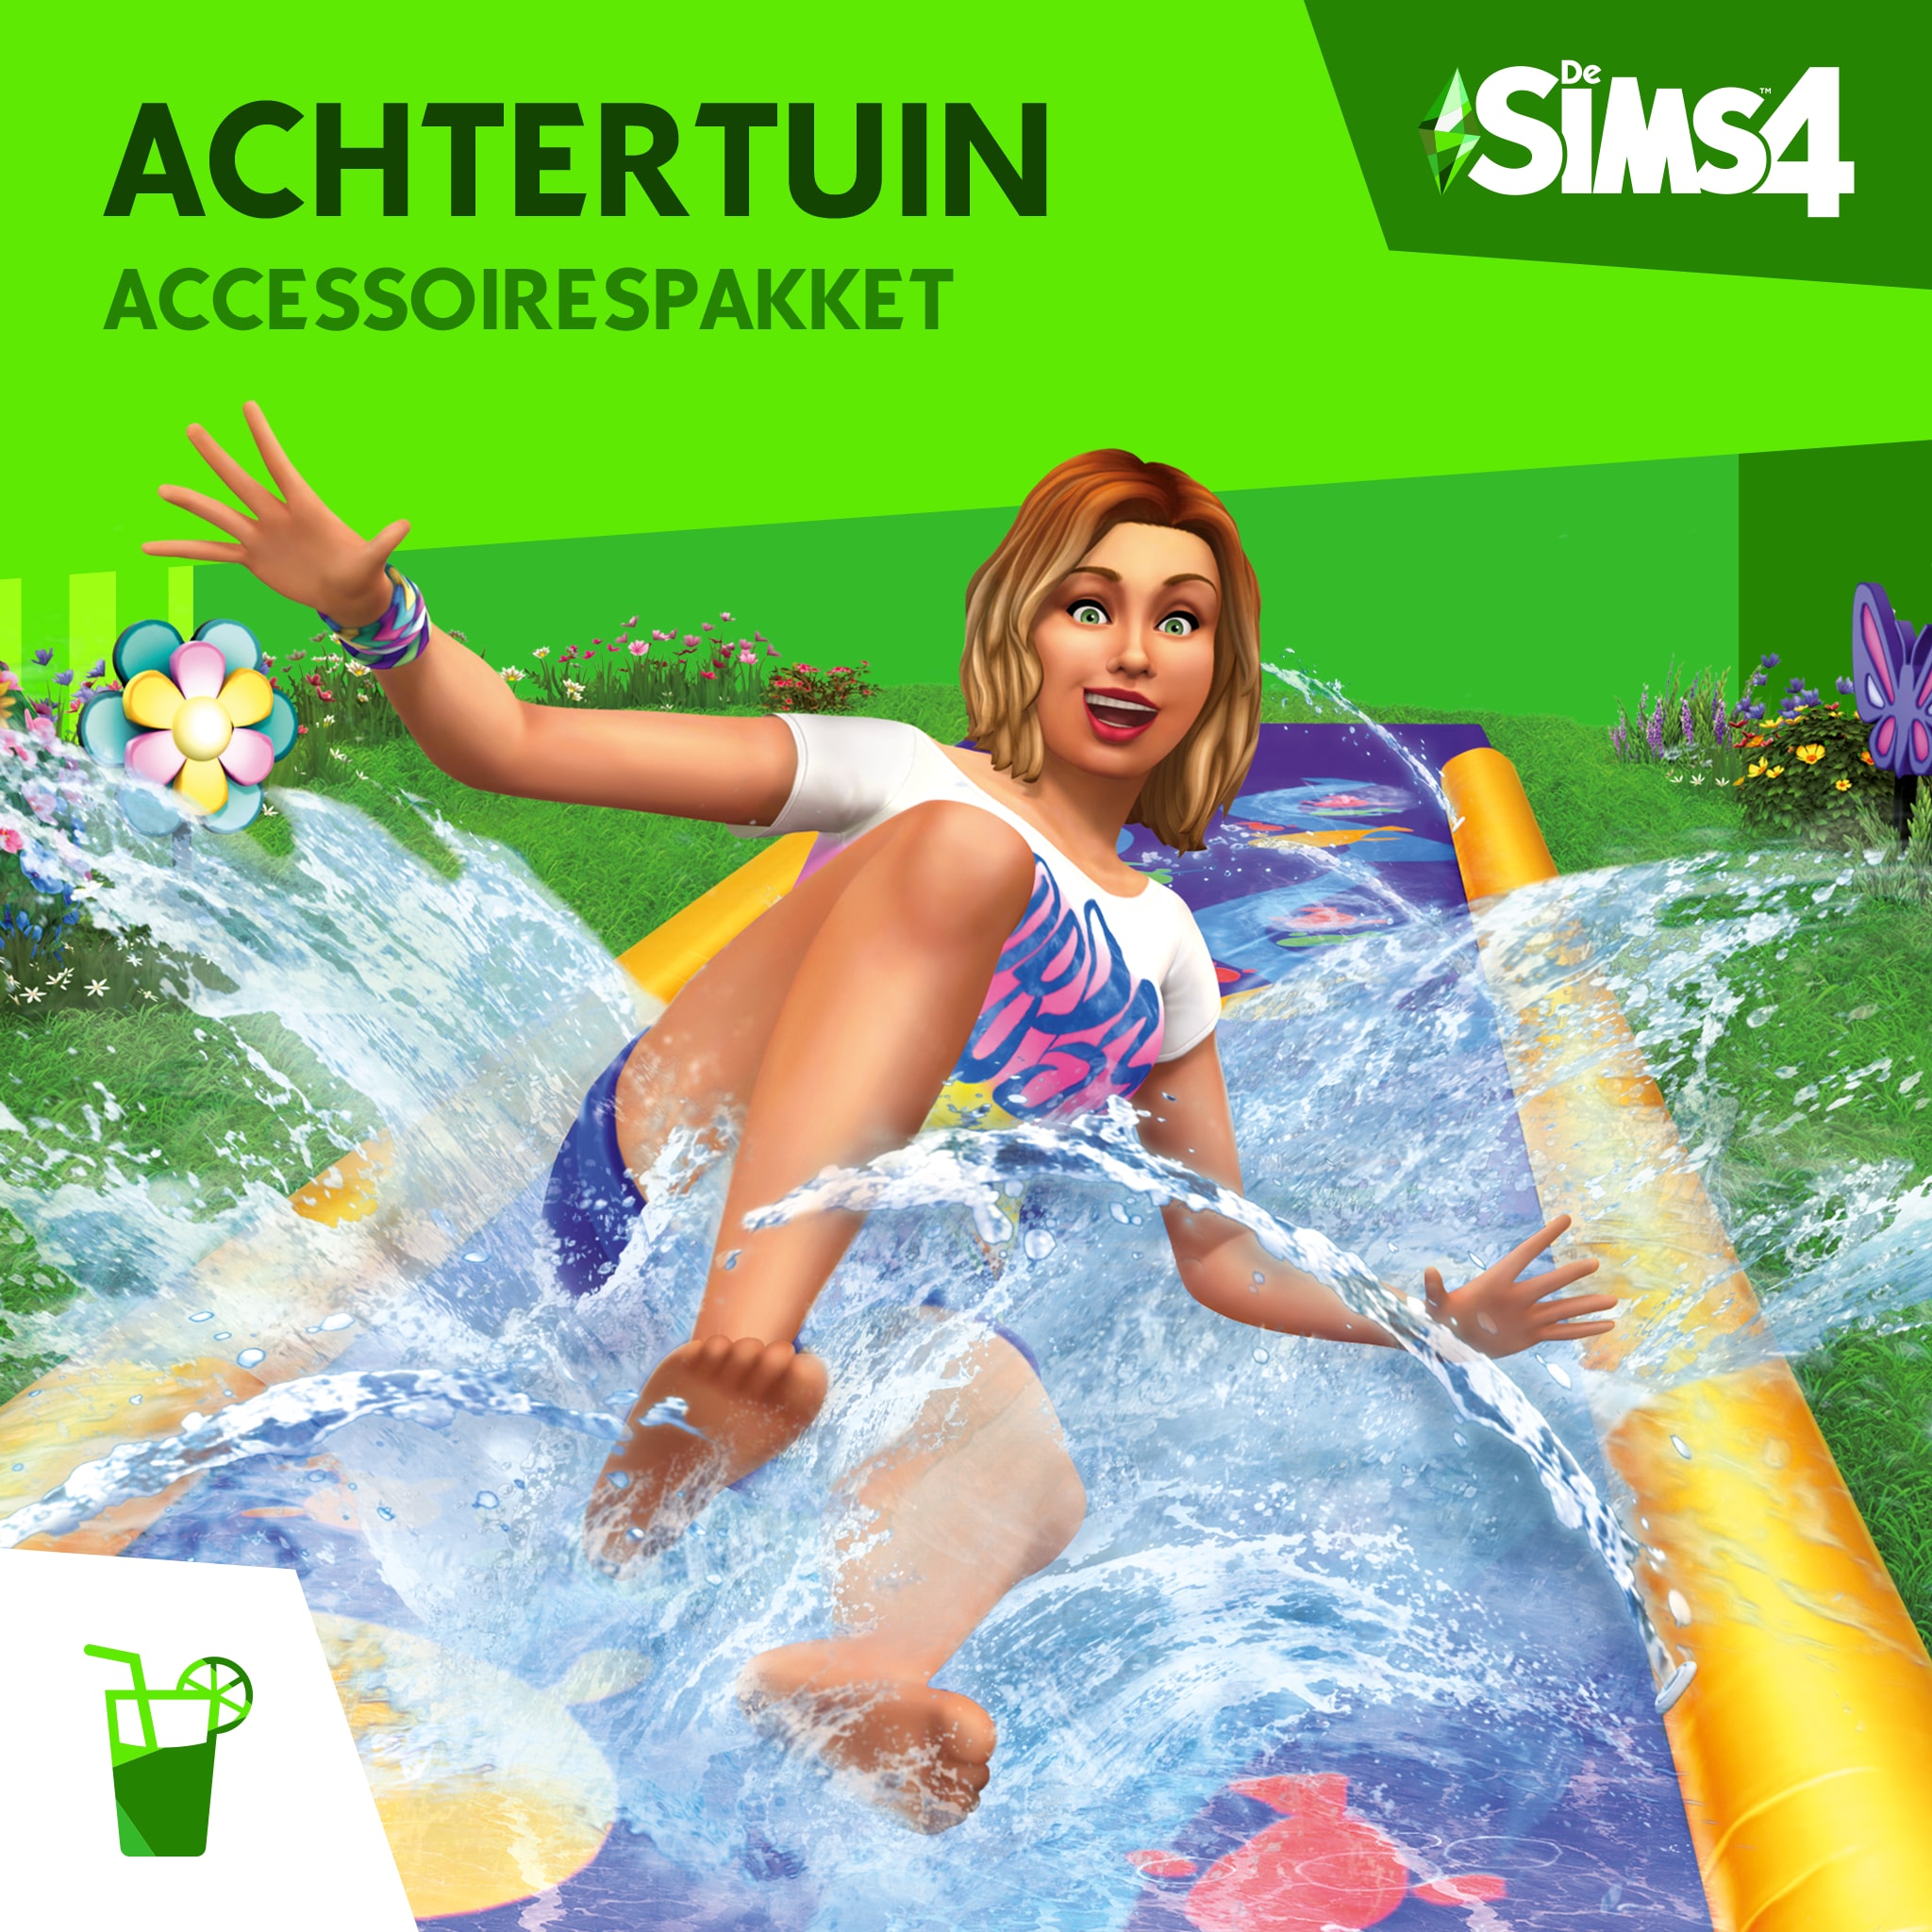 De Sims™ 4 Achtertuin Accessoires